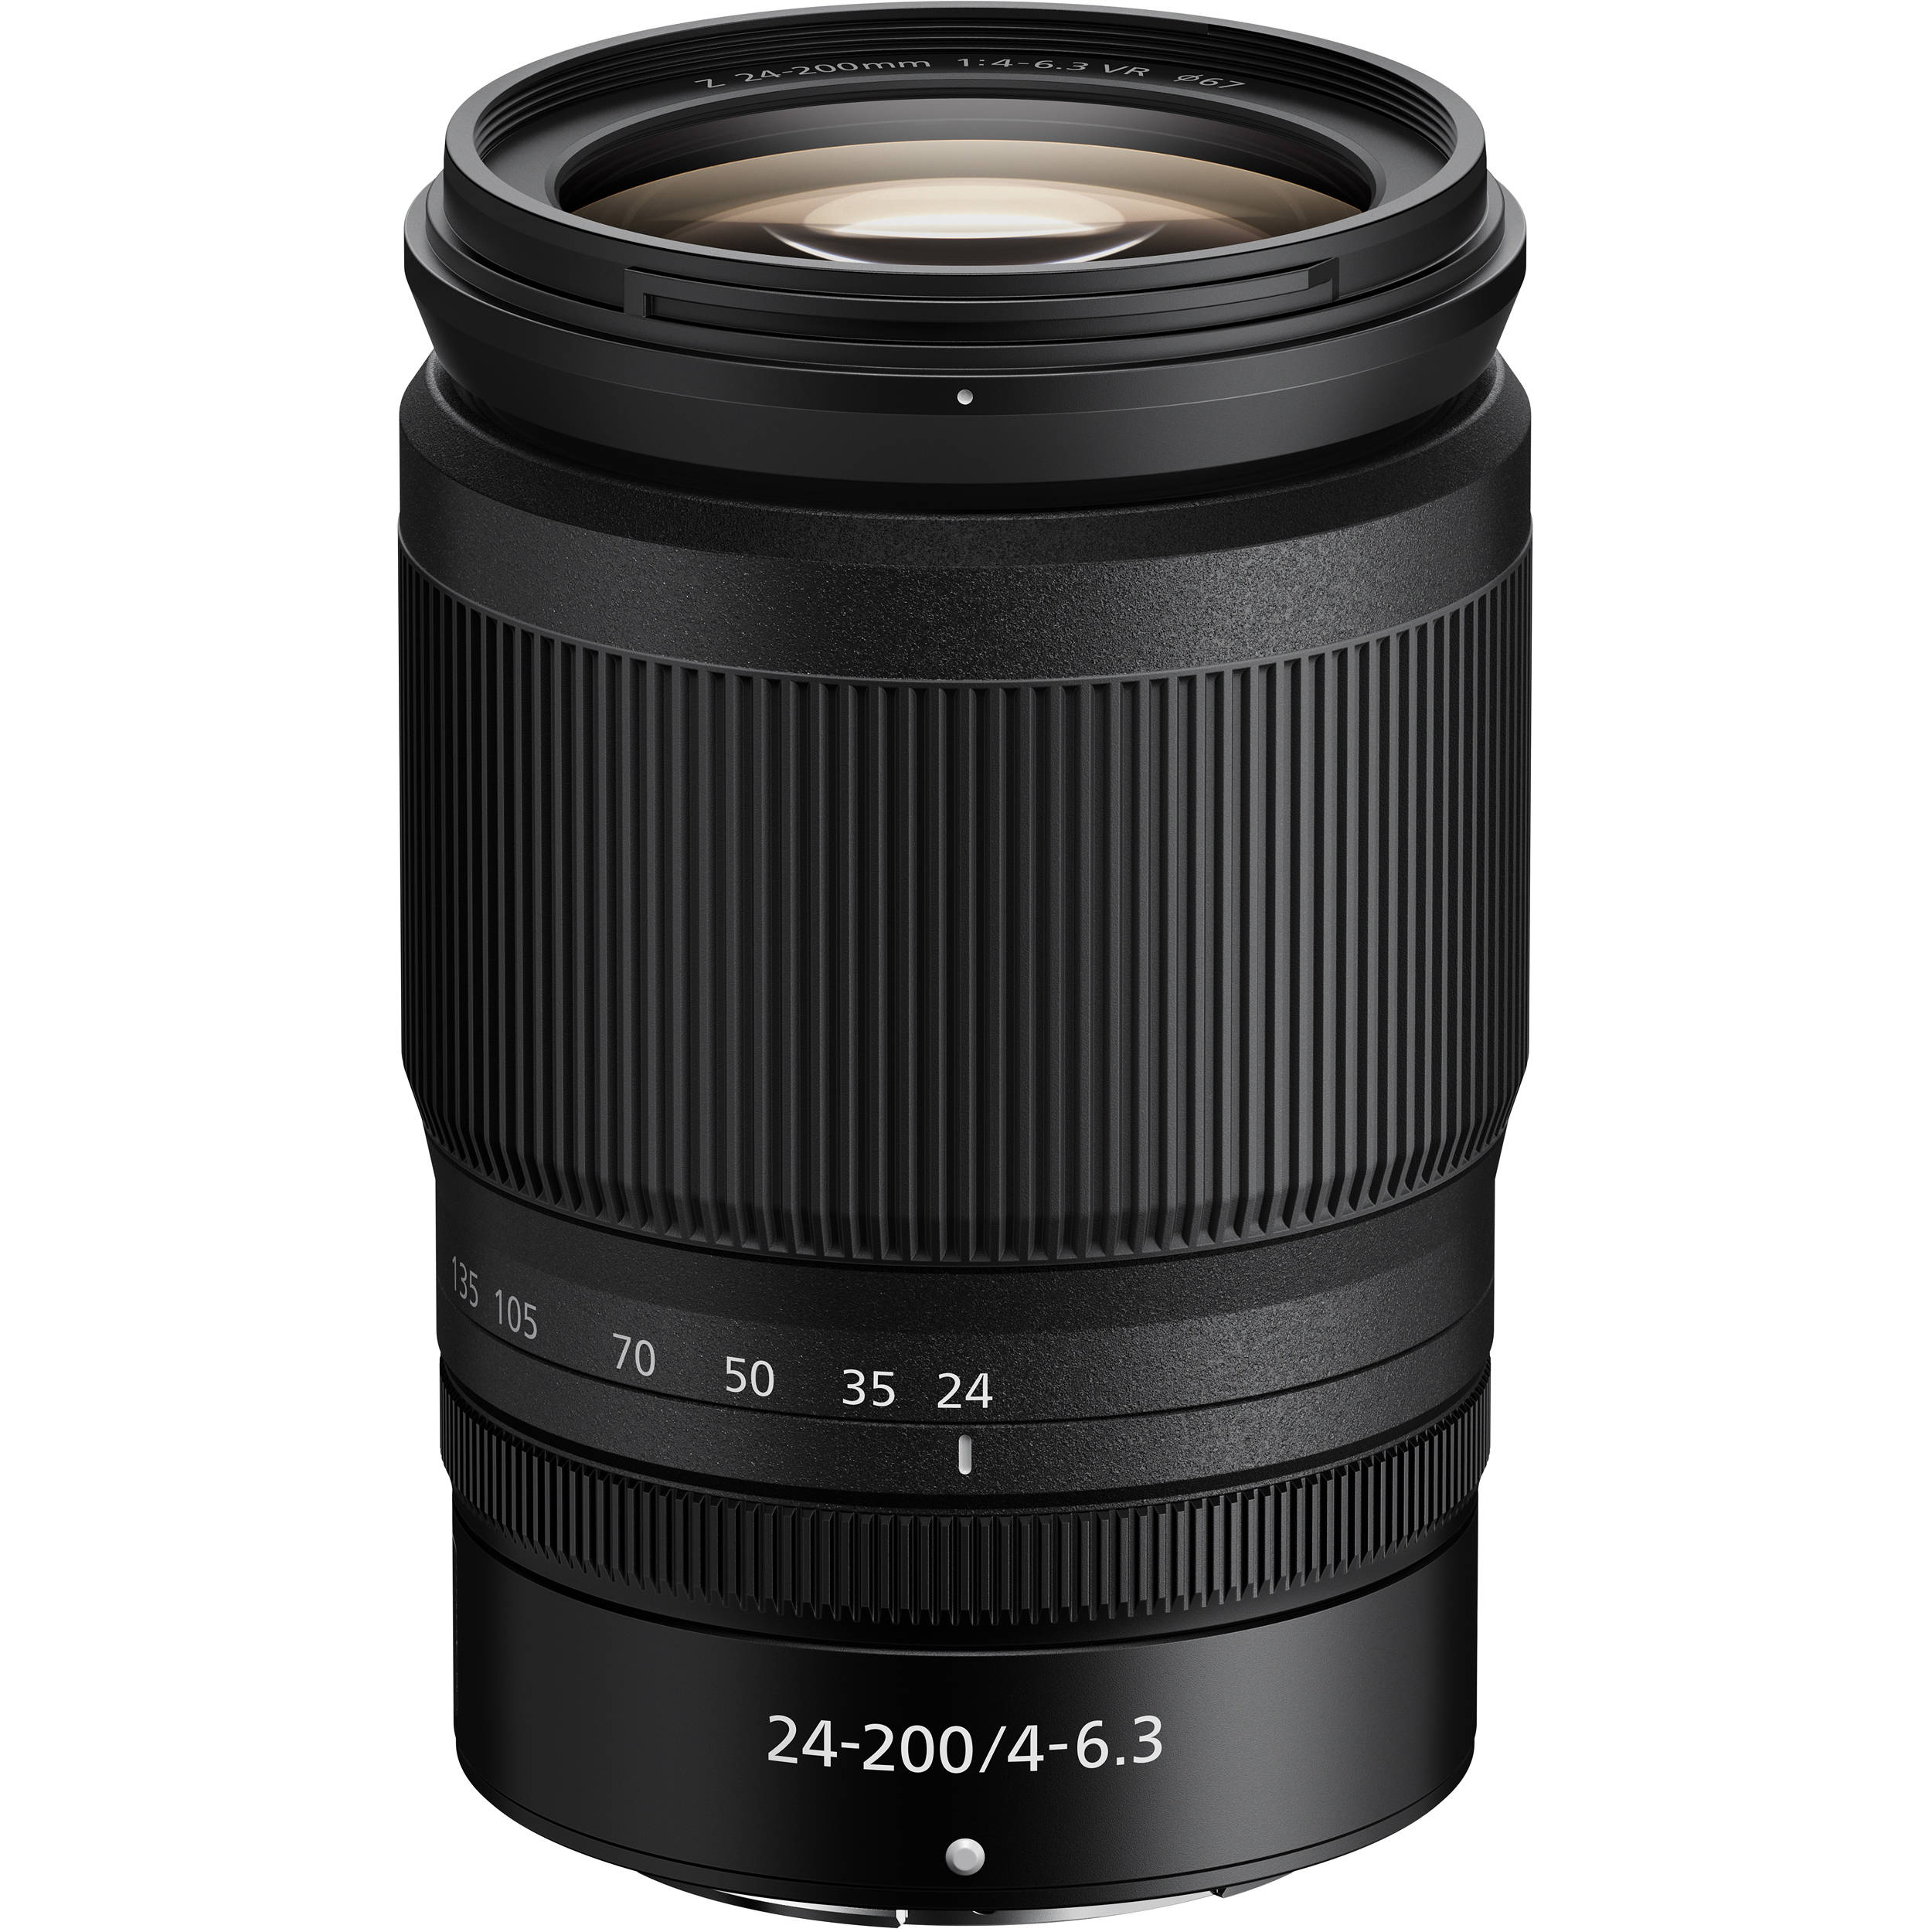 Nikon Z 24-200mm F4-6.3 VR (Mới 100%) Hàng VIC-VN Bảo hành chính hãng 01 năm toàn quốc Cover